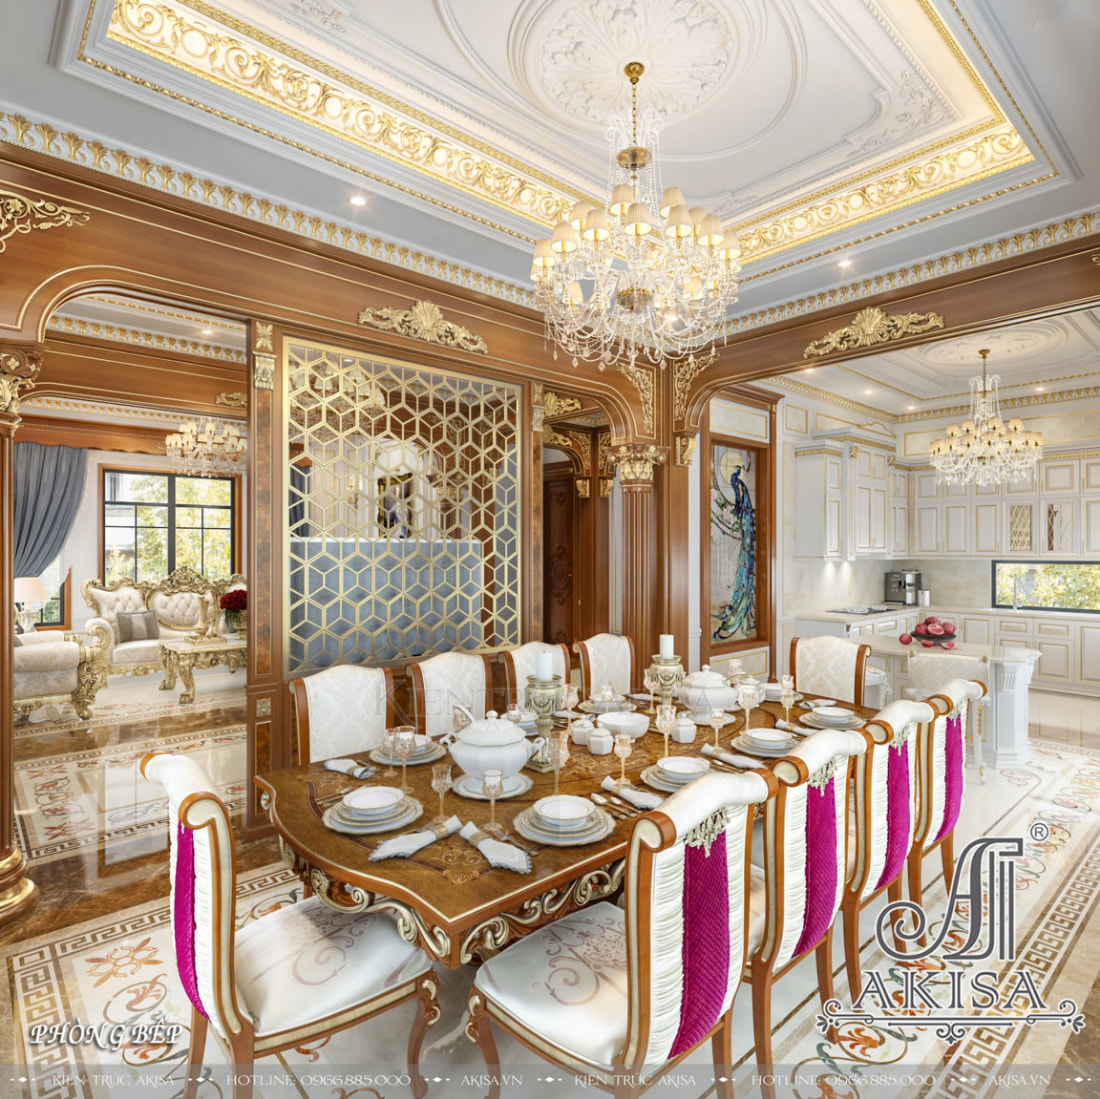 Không gian phòng ăn được thiết kế theo phong cách cổ điển mang đậm chất quý tộc châu âu